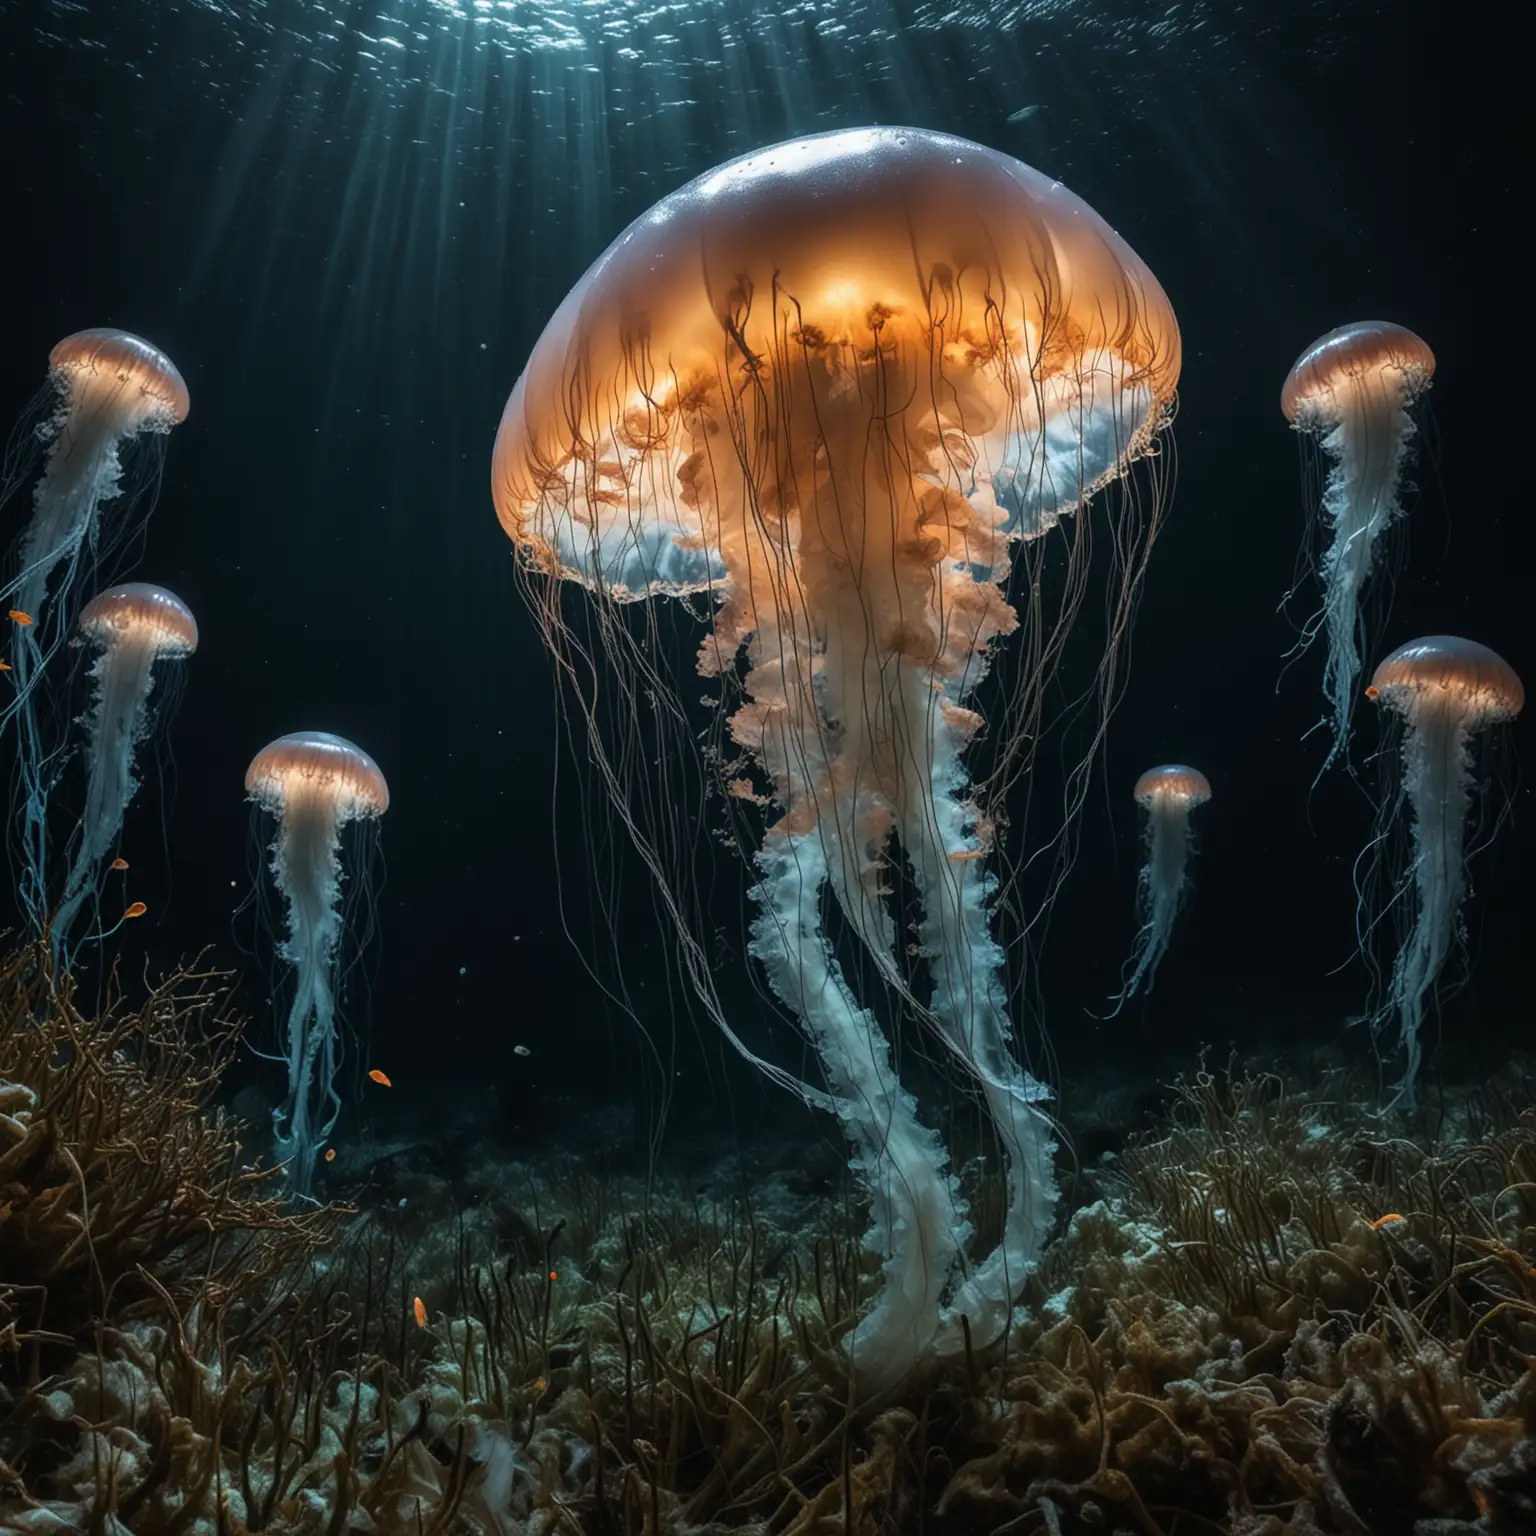 Egy mélytengeri kutatóexpedíció során a tudósok váratlanul felfedeznek valami elképesztőt: egy hatalmas medúza lebeg a tengerfenéken, s világító testével kivilágítja a környező sötétséget, körülötte halak cikáznak. pszichedelikus medúza kolónia, csillogó hínárfüggönyök között.